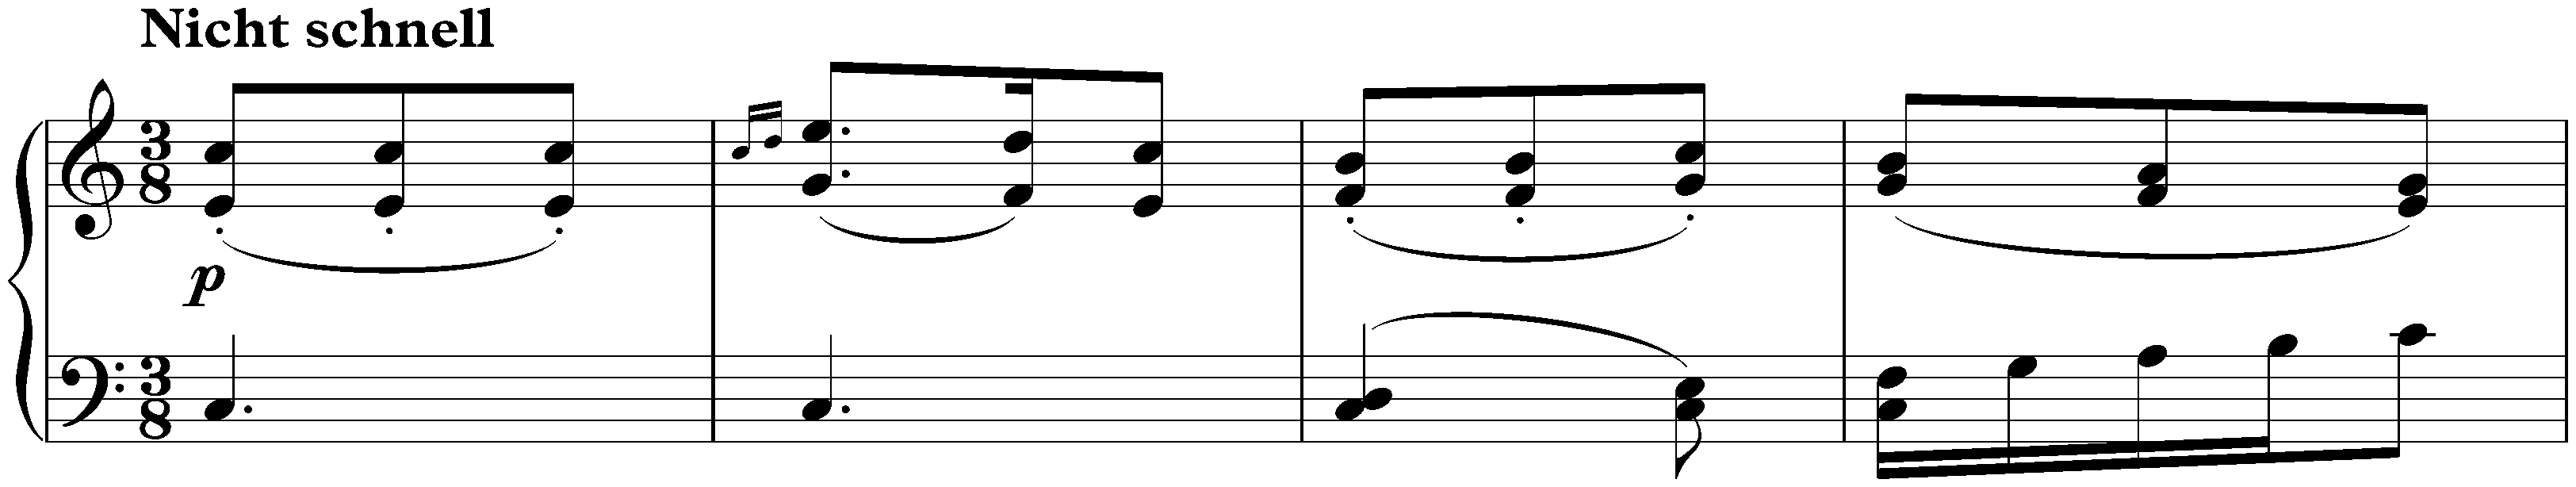 Album für die Jugend, op. 68; 58. (appendix II no. 4) Ein Stückchen von Mozart